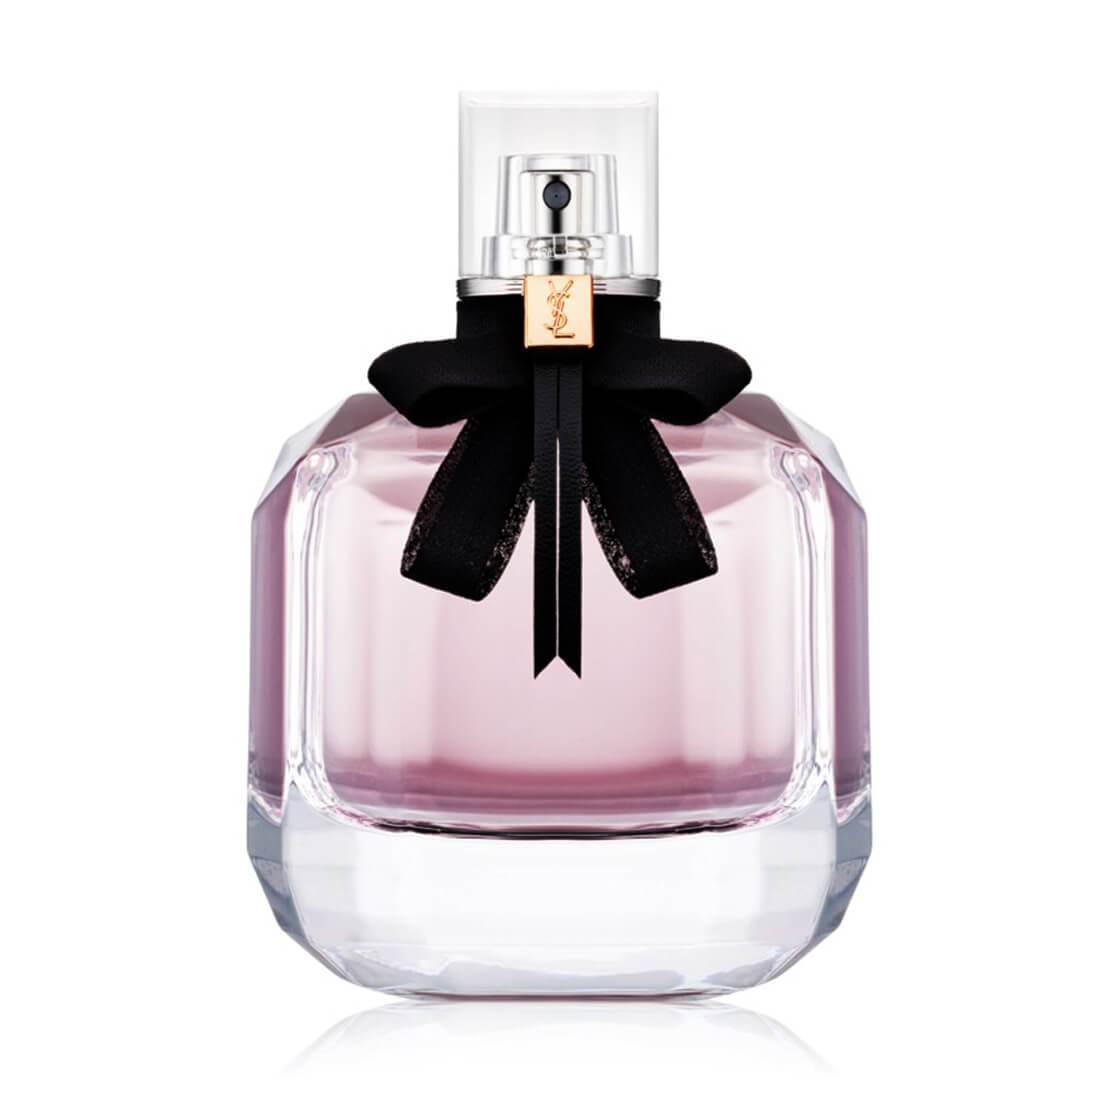 Yves Saint Laurent Mon Paris Eau De Parfum For Women - 90ml